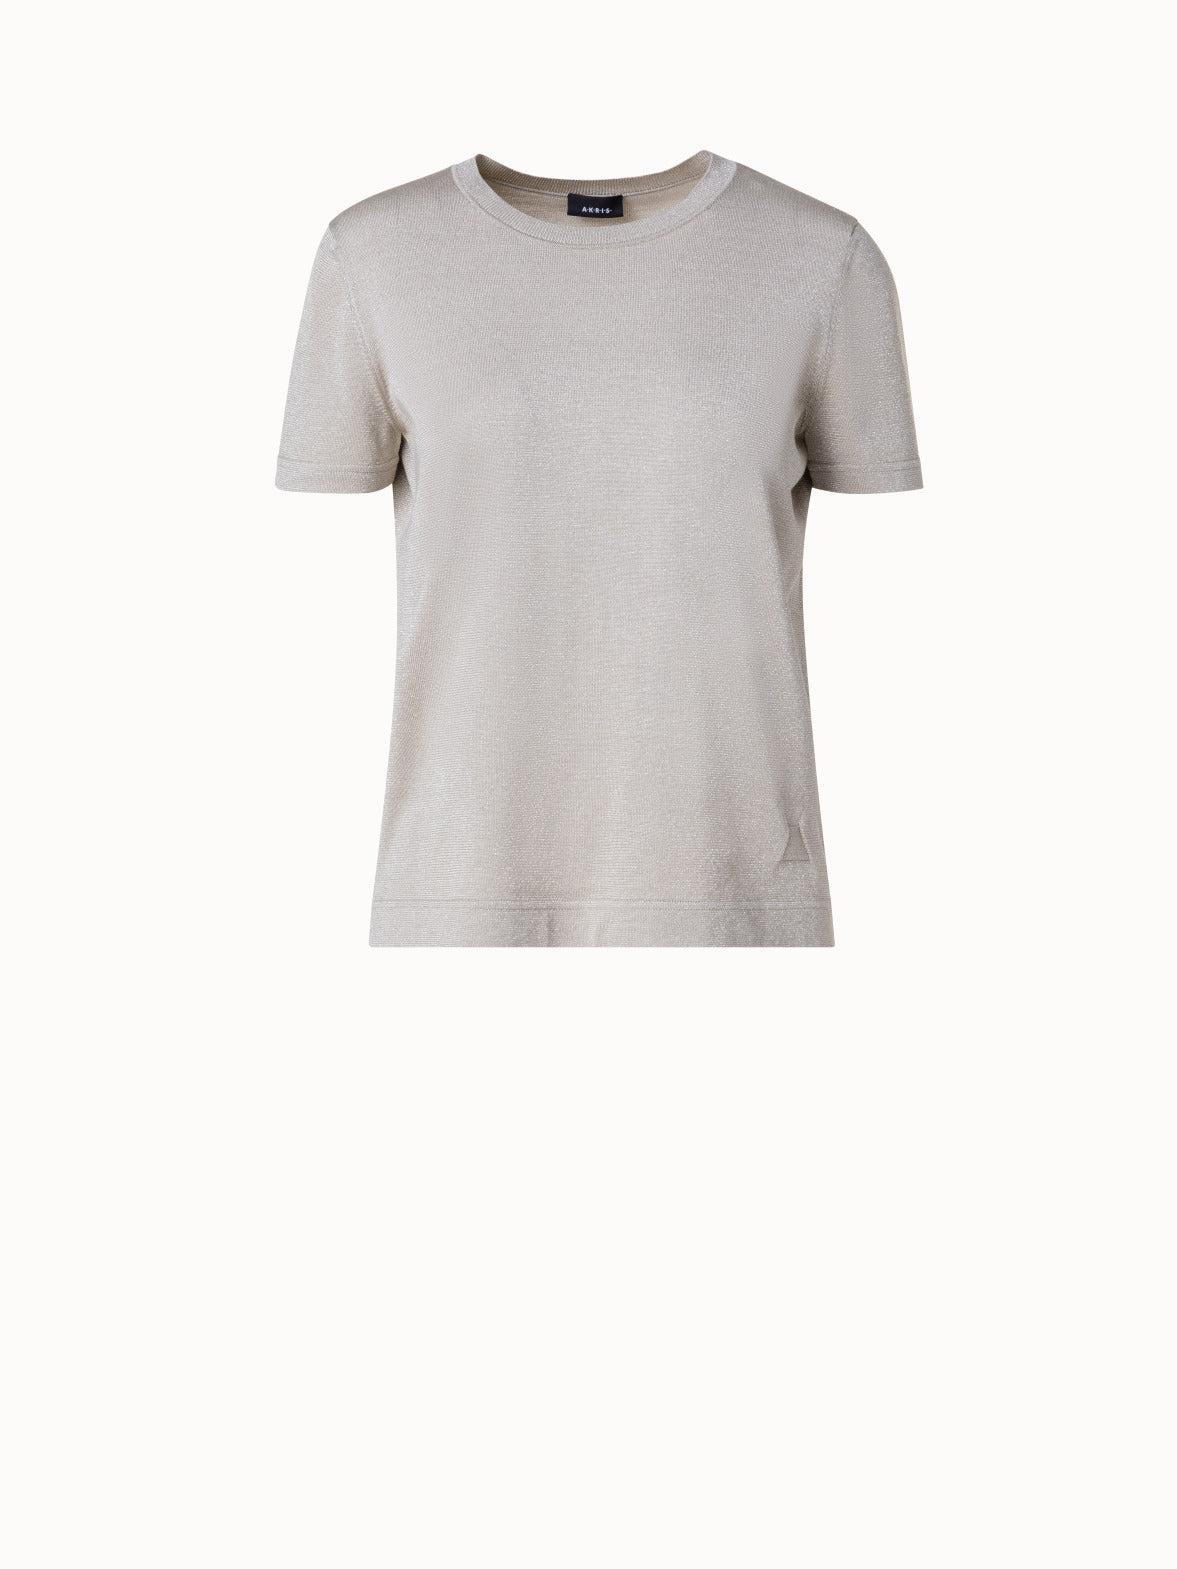 V-neck Plain Calvin Klein Twill Cotton Full Sleeves Shirt